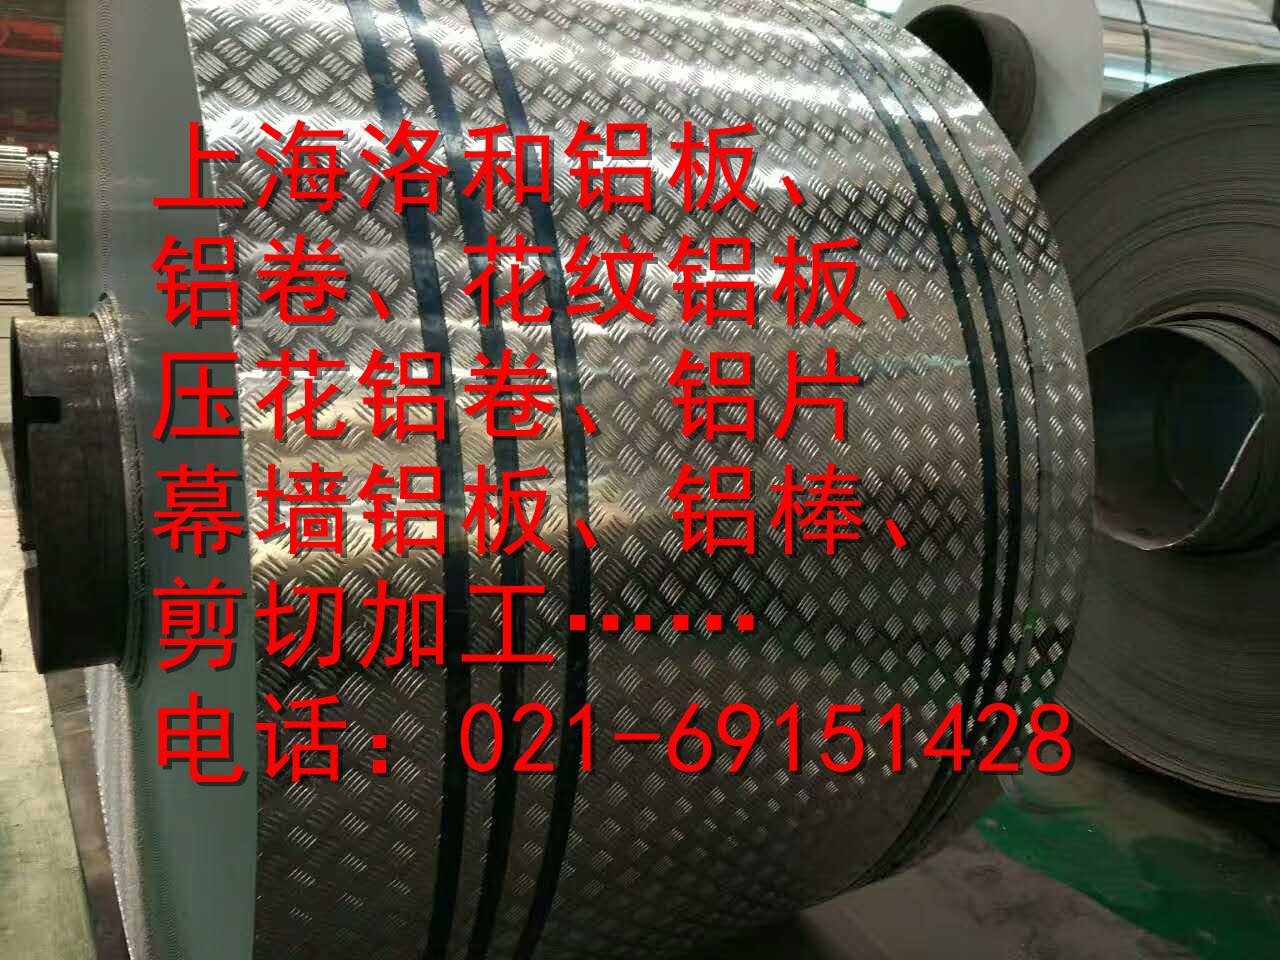 上海市指针花纹厂家供应指针花纹 现货供应 指南针铝板